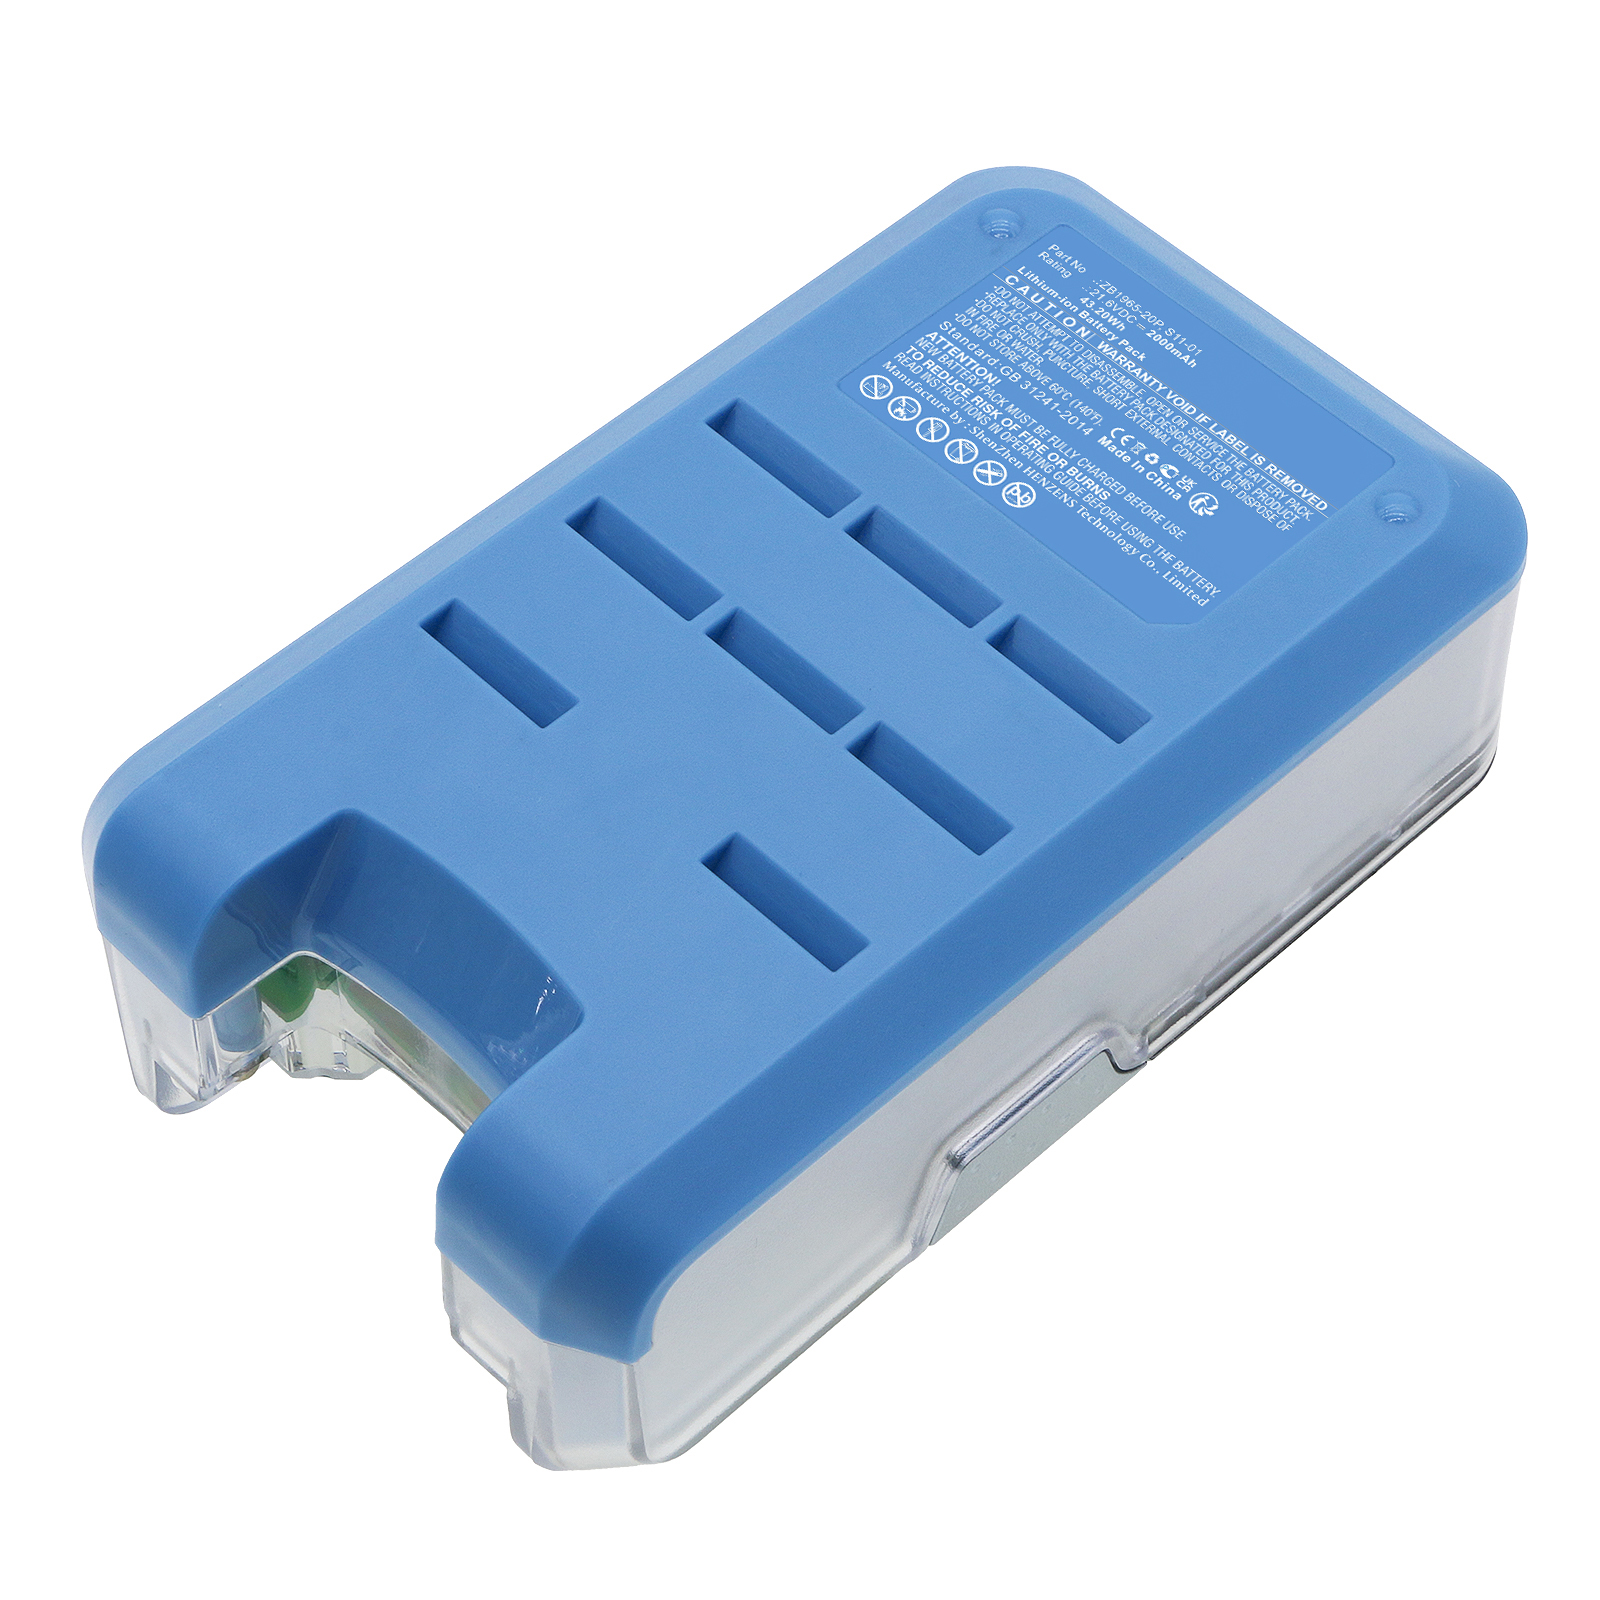 Synergy Digital Vacuum Cleaner Battery Compatible with Tineco ZB1965-20P Vacuum Cleaner Battery (Li-ion, 21.6V, 2000mAh)